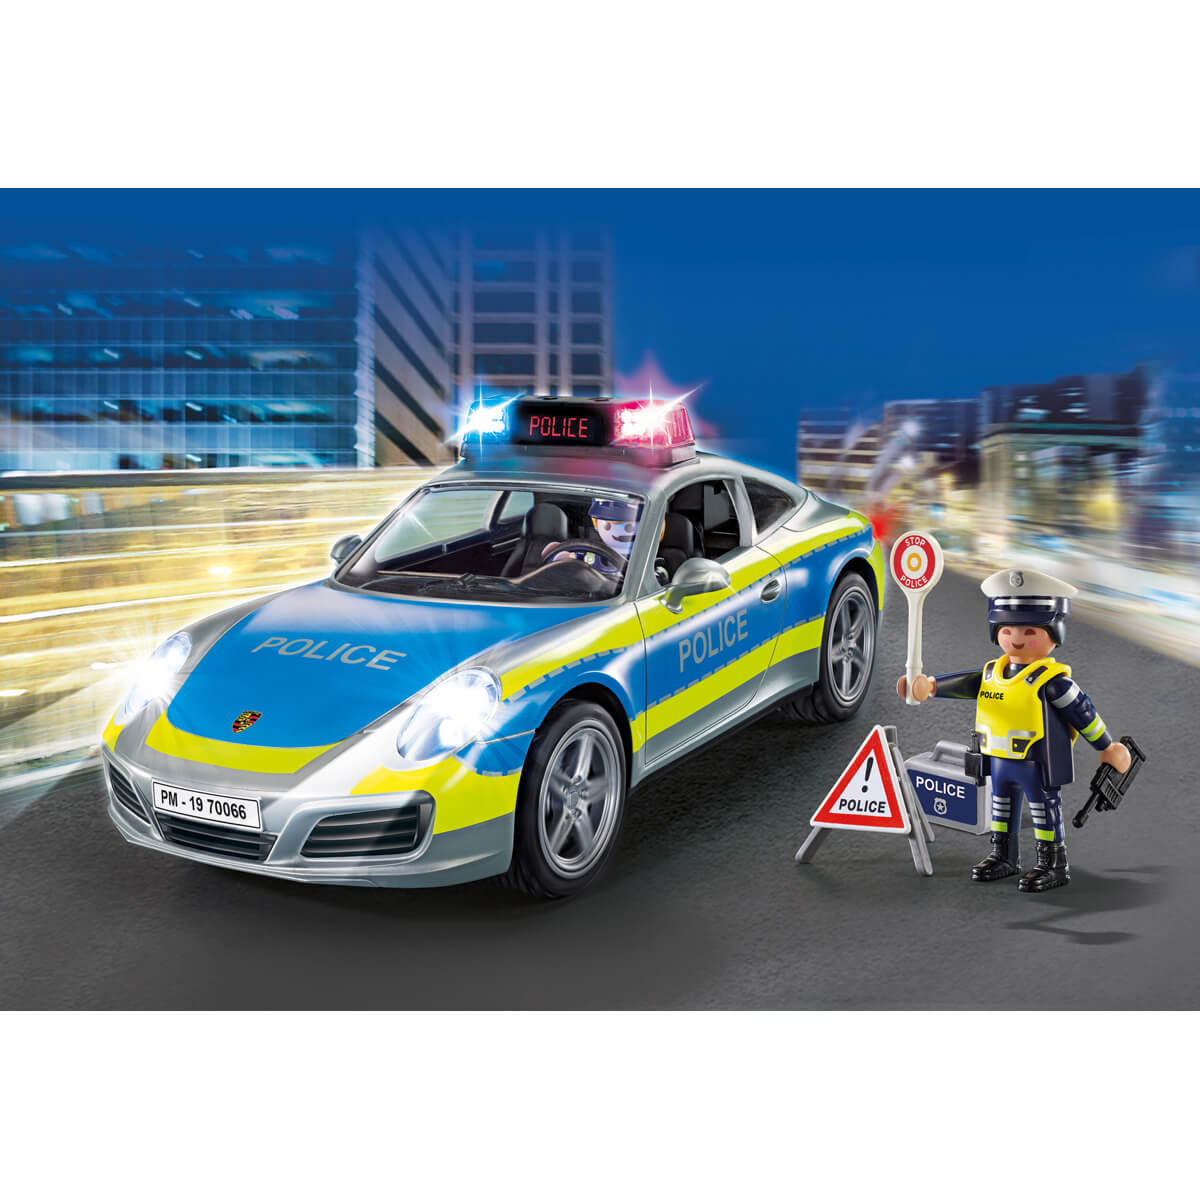 ΠΑΙΔΙ | Παιχνίδια | PLAYMOBIL | ΑΣΤΥΝΟΜΙΑ (ΑΓΟΡΙΑ 4-10 ΕΤΩΝ) Porsche 911 Carrera 4S Αστυνομικό όχημα